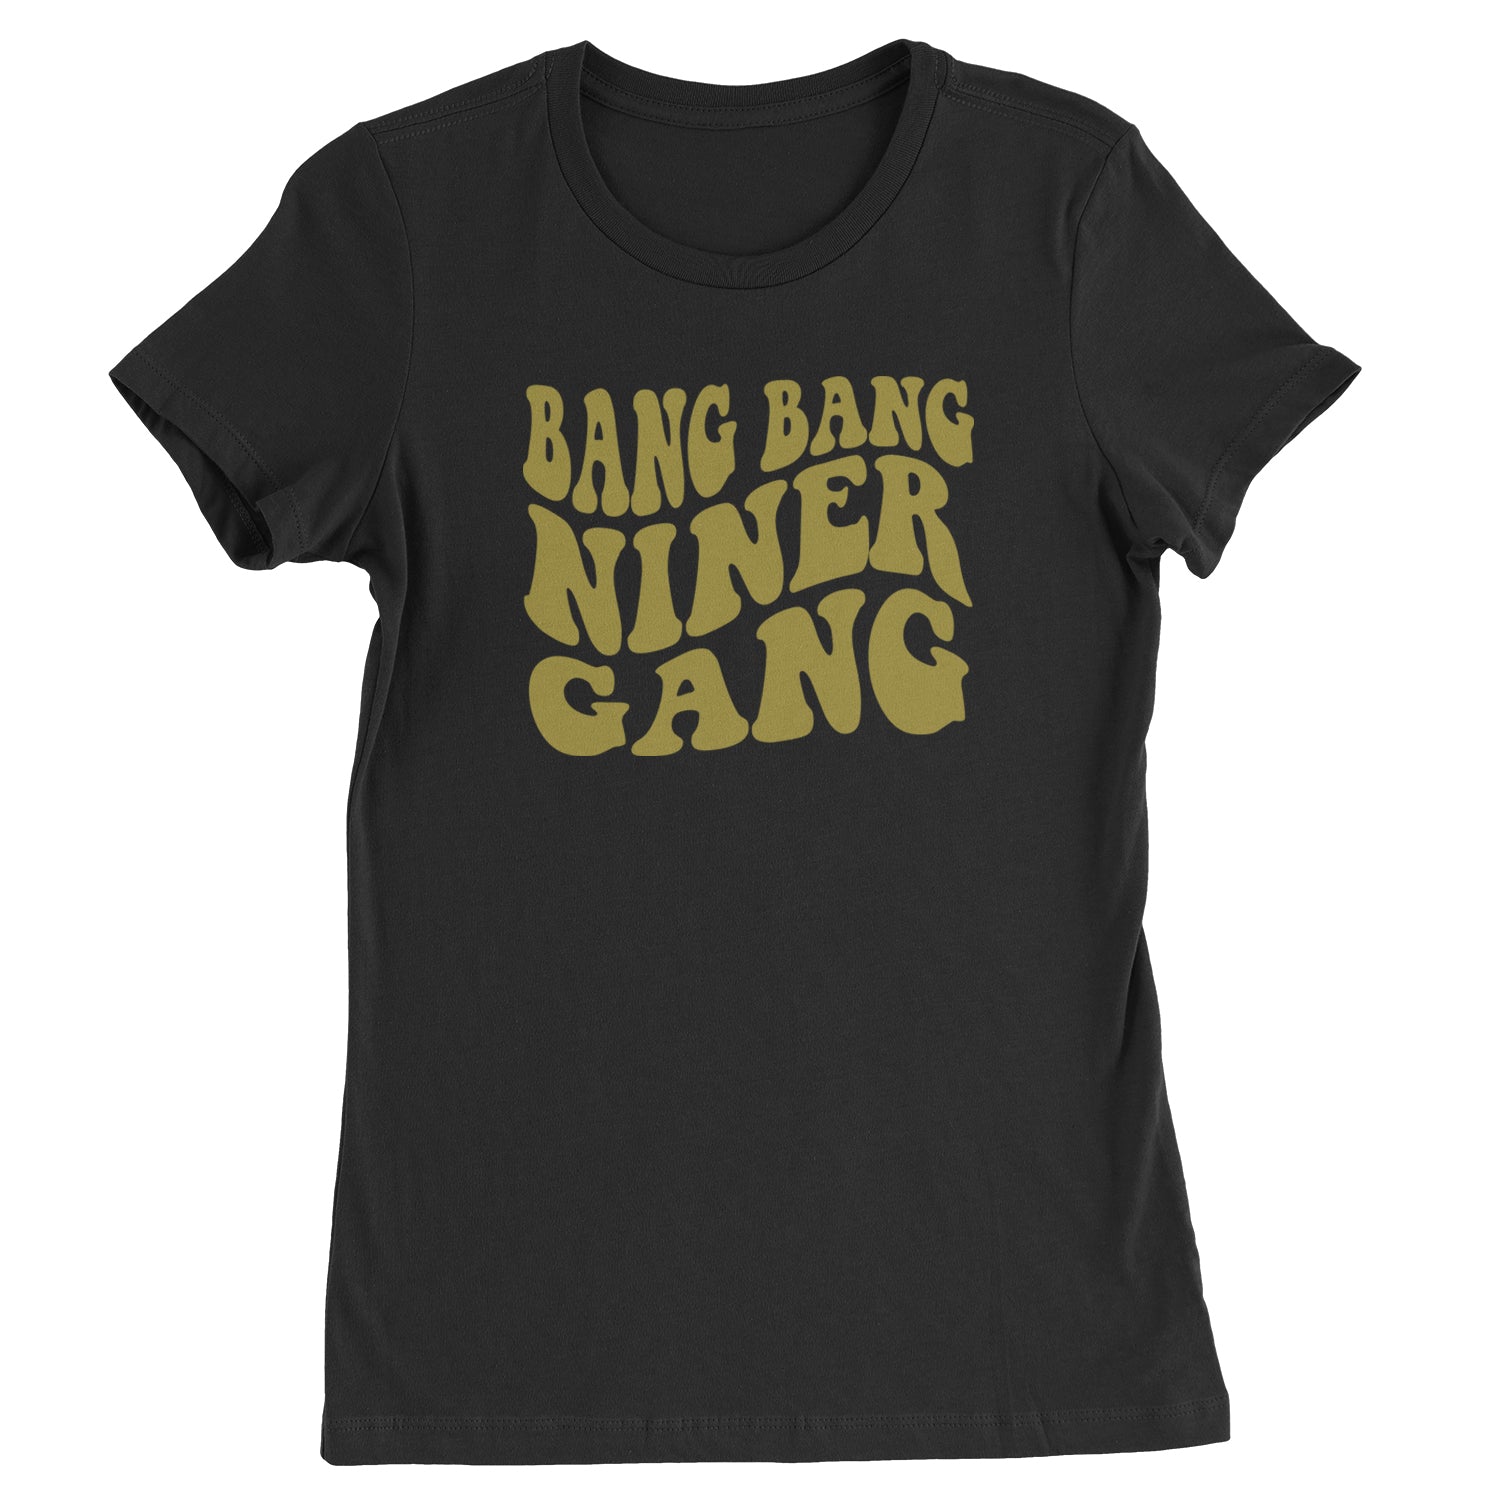 WAVE Bang Bang Niner Gang San Francisco Womens T-shirt